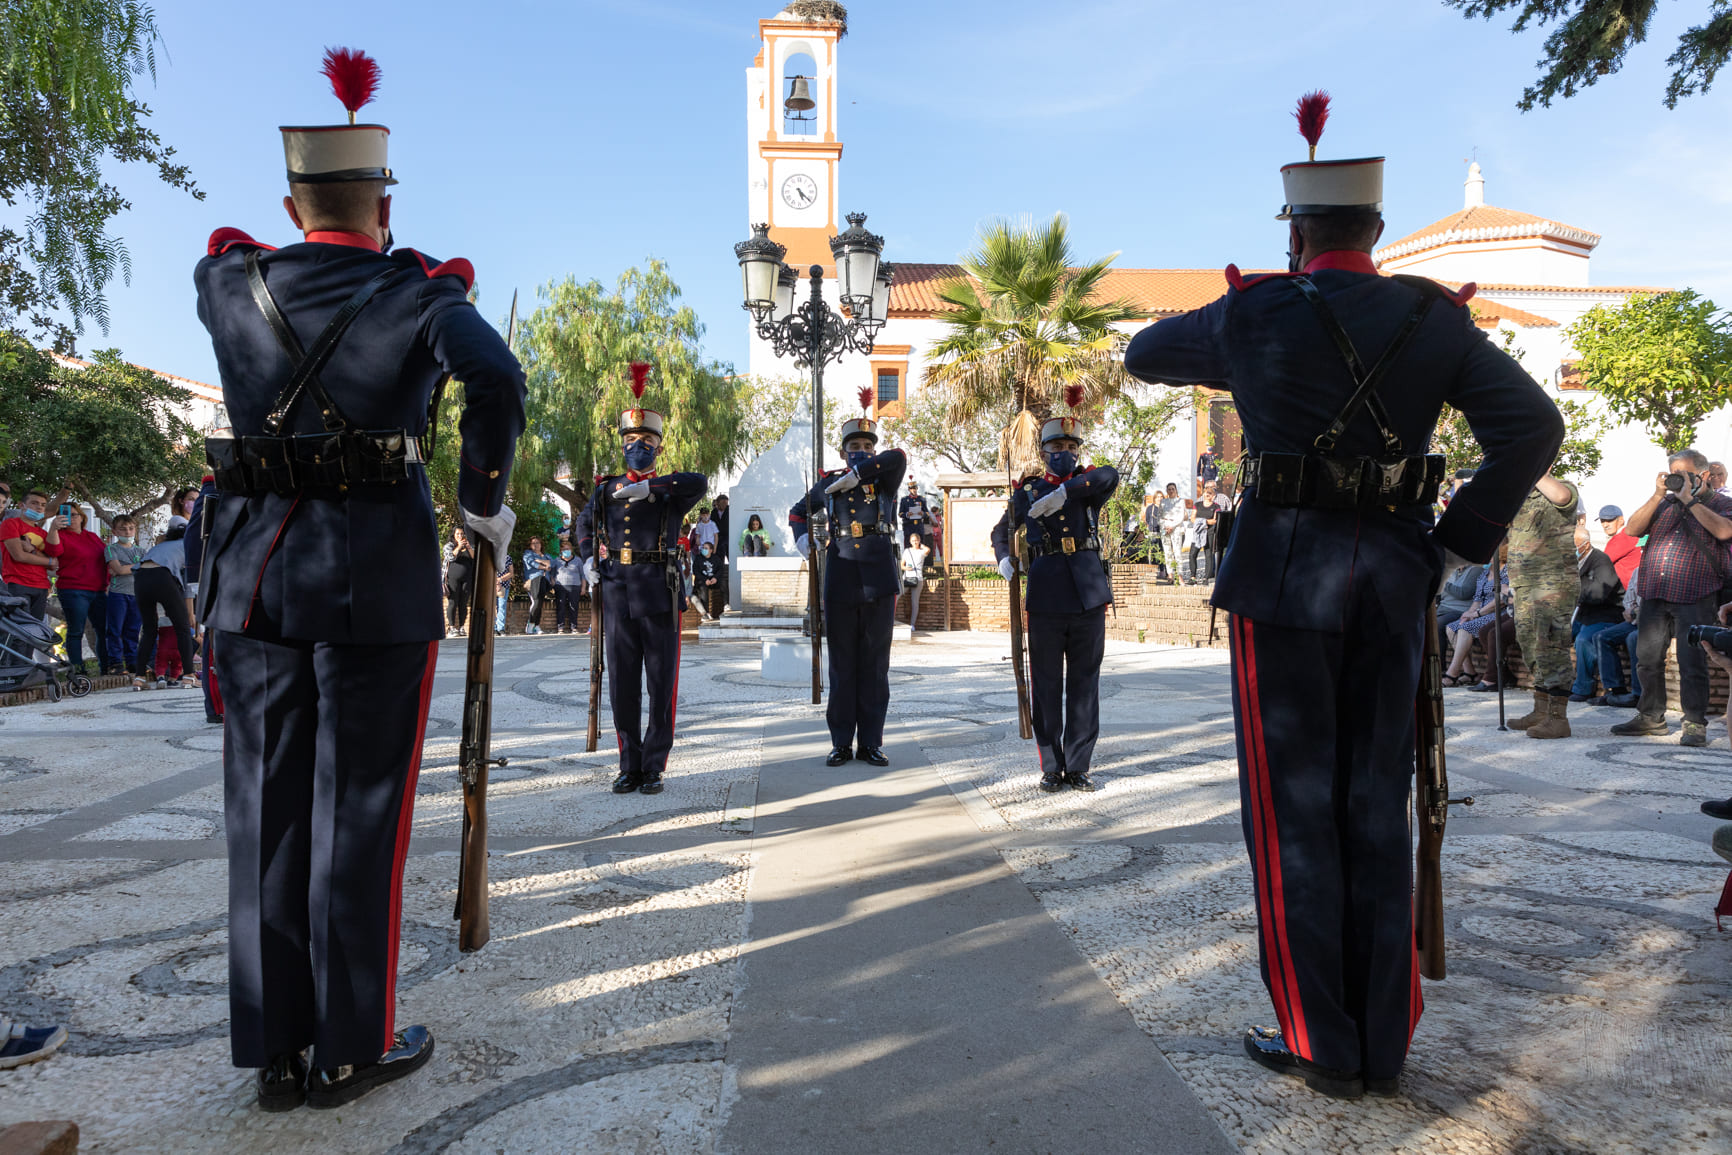 Actividades del Ejercicio de la Guardia Real Huelva 2021